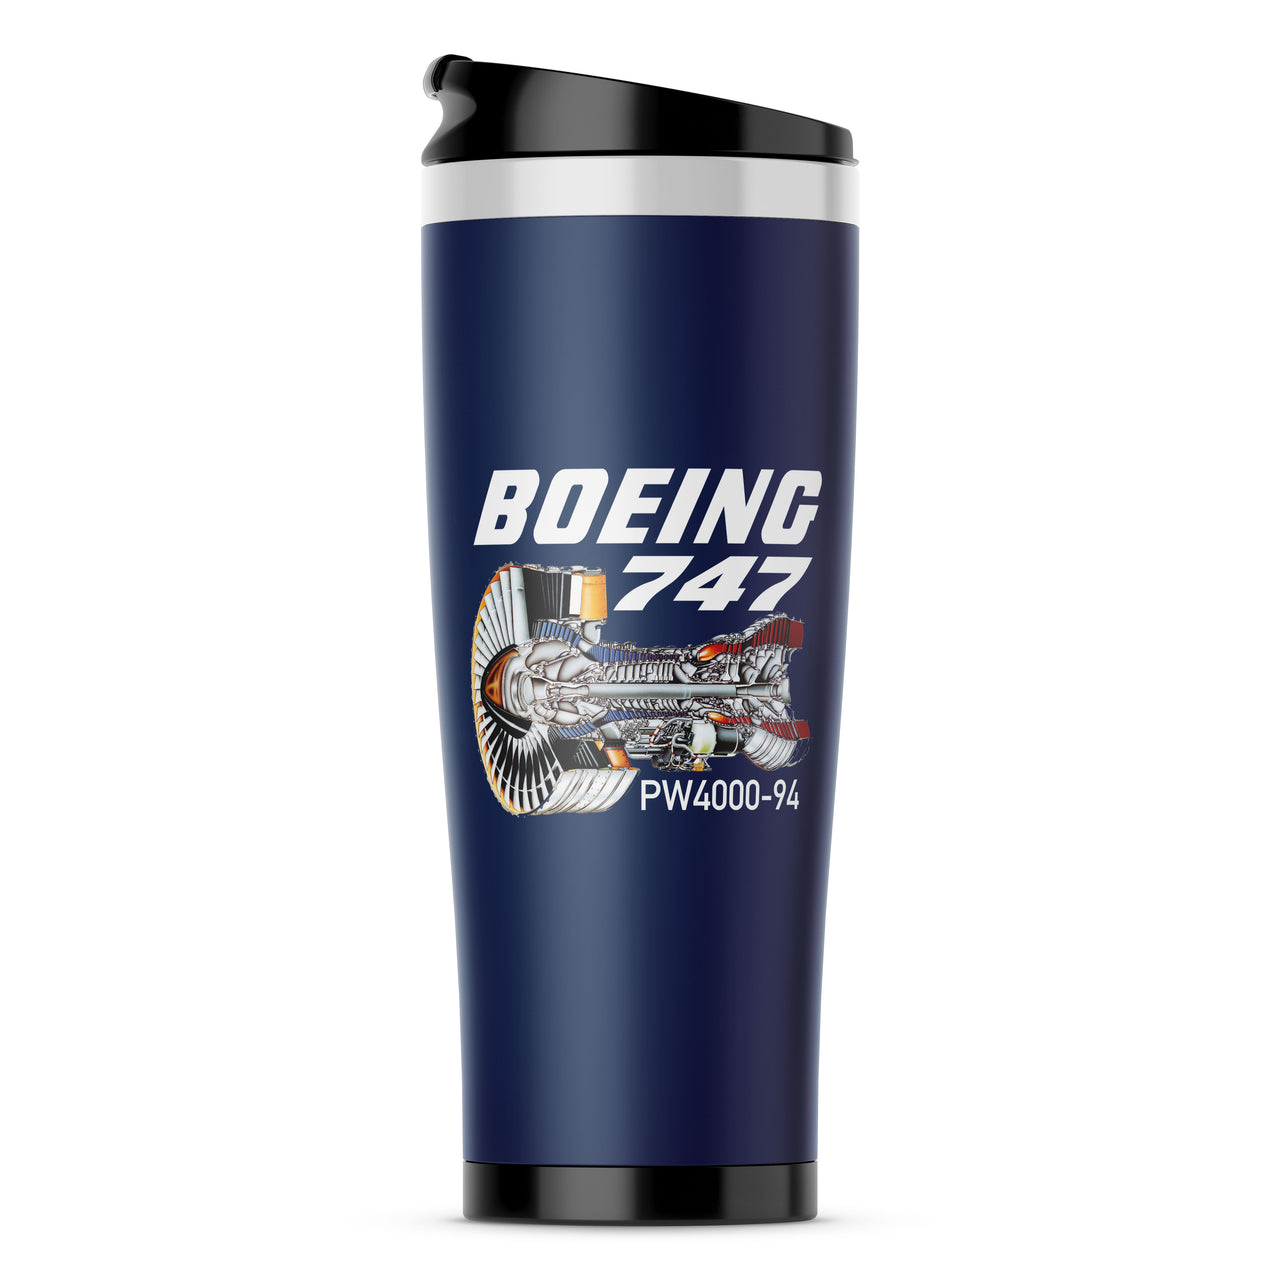 Boeing 747 & PW4000-94 Engine Designed Travel Mugs